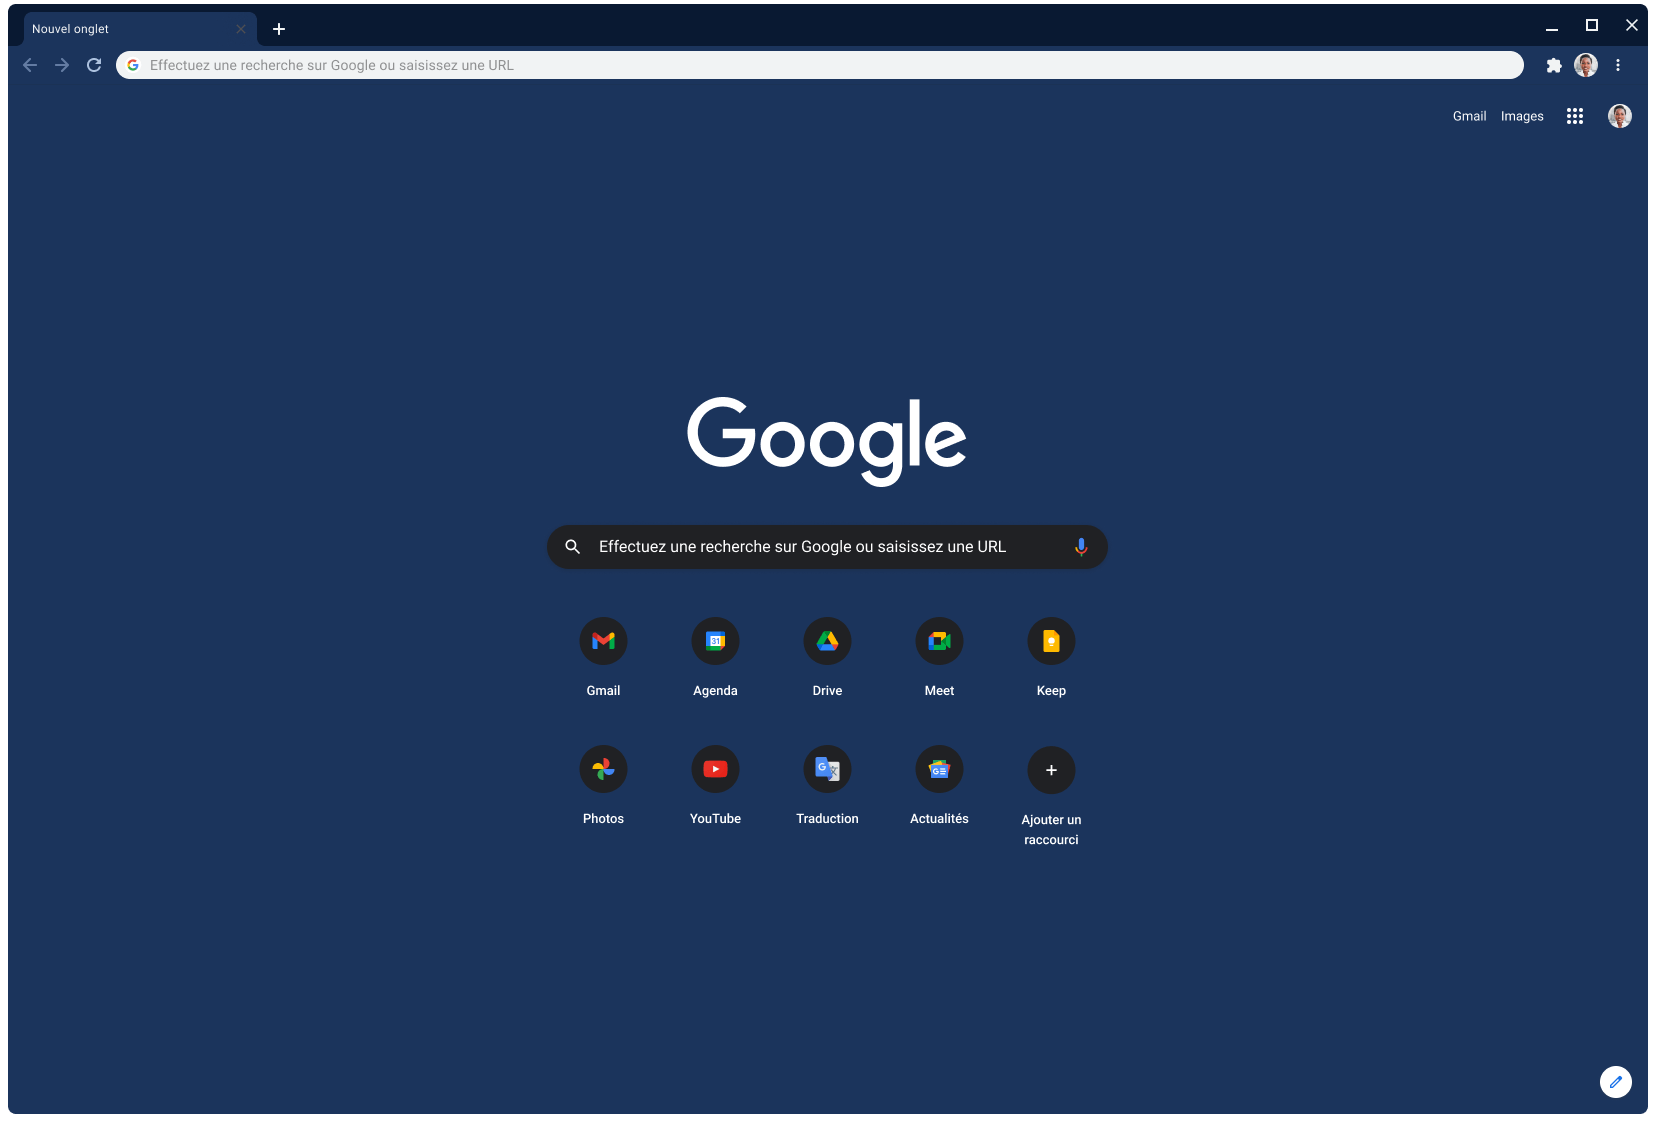 Fenêtre du navigateur Chrome affichant la page google.com, avec le thème Slate.